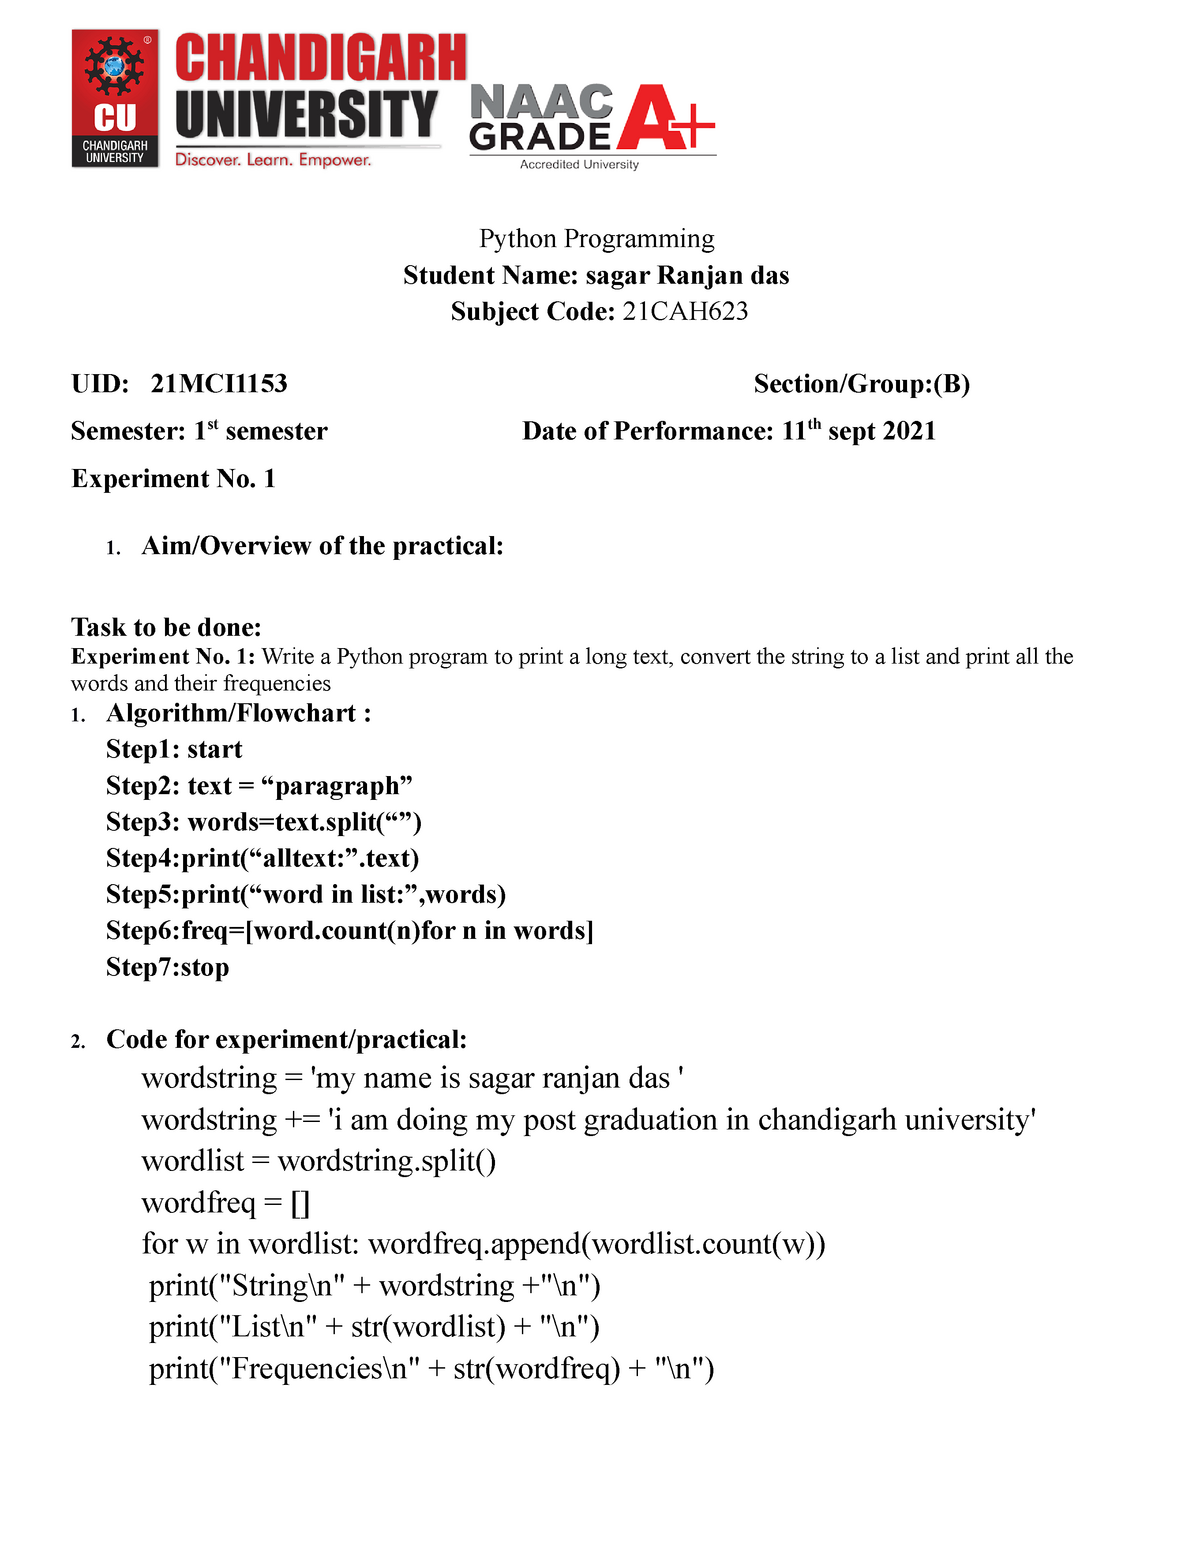 worksheet-1-plsql-practice-paper-python-programming-student-name-sagar-ranjan-das-subject